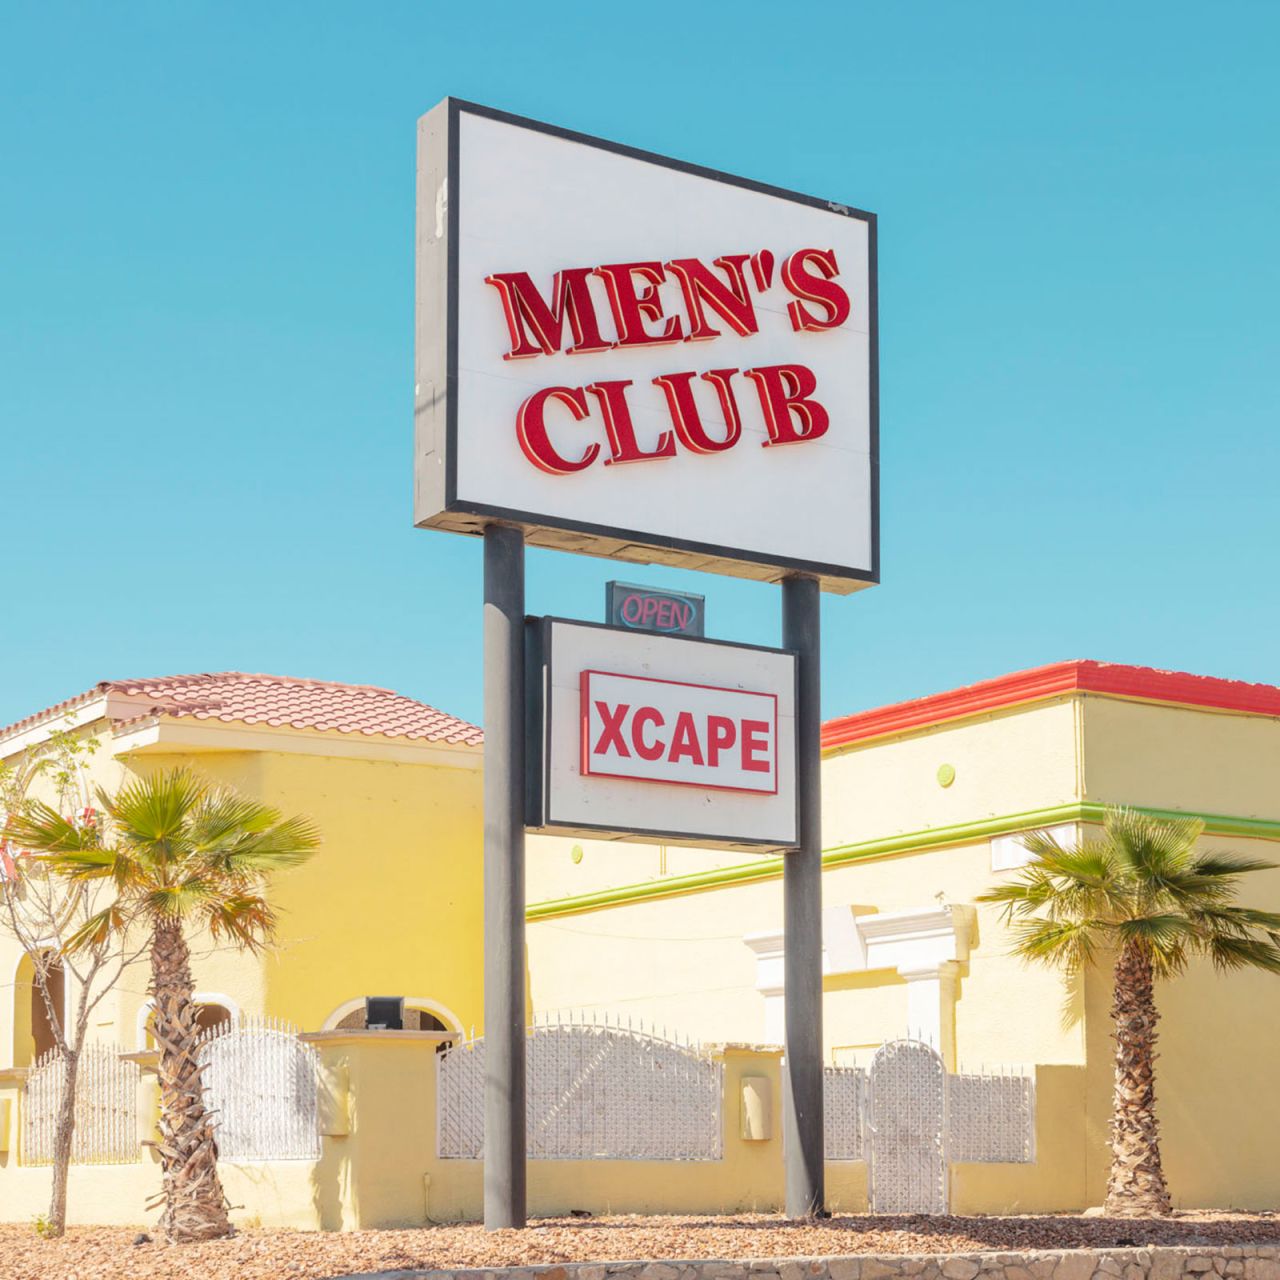 باشگاه مردانه Xcape در ال پاسو، تگزاس.